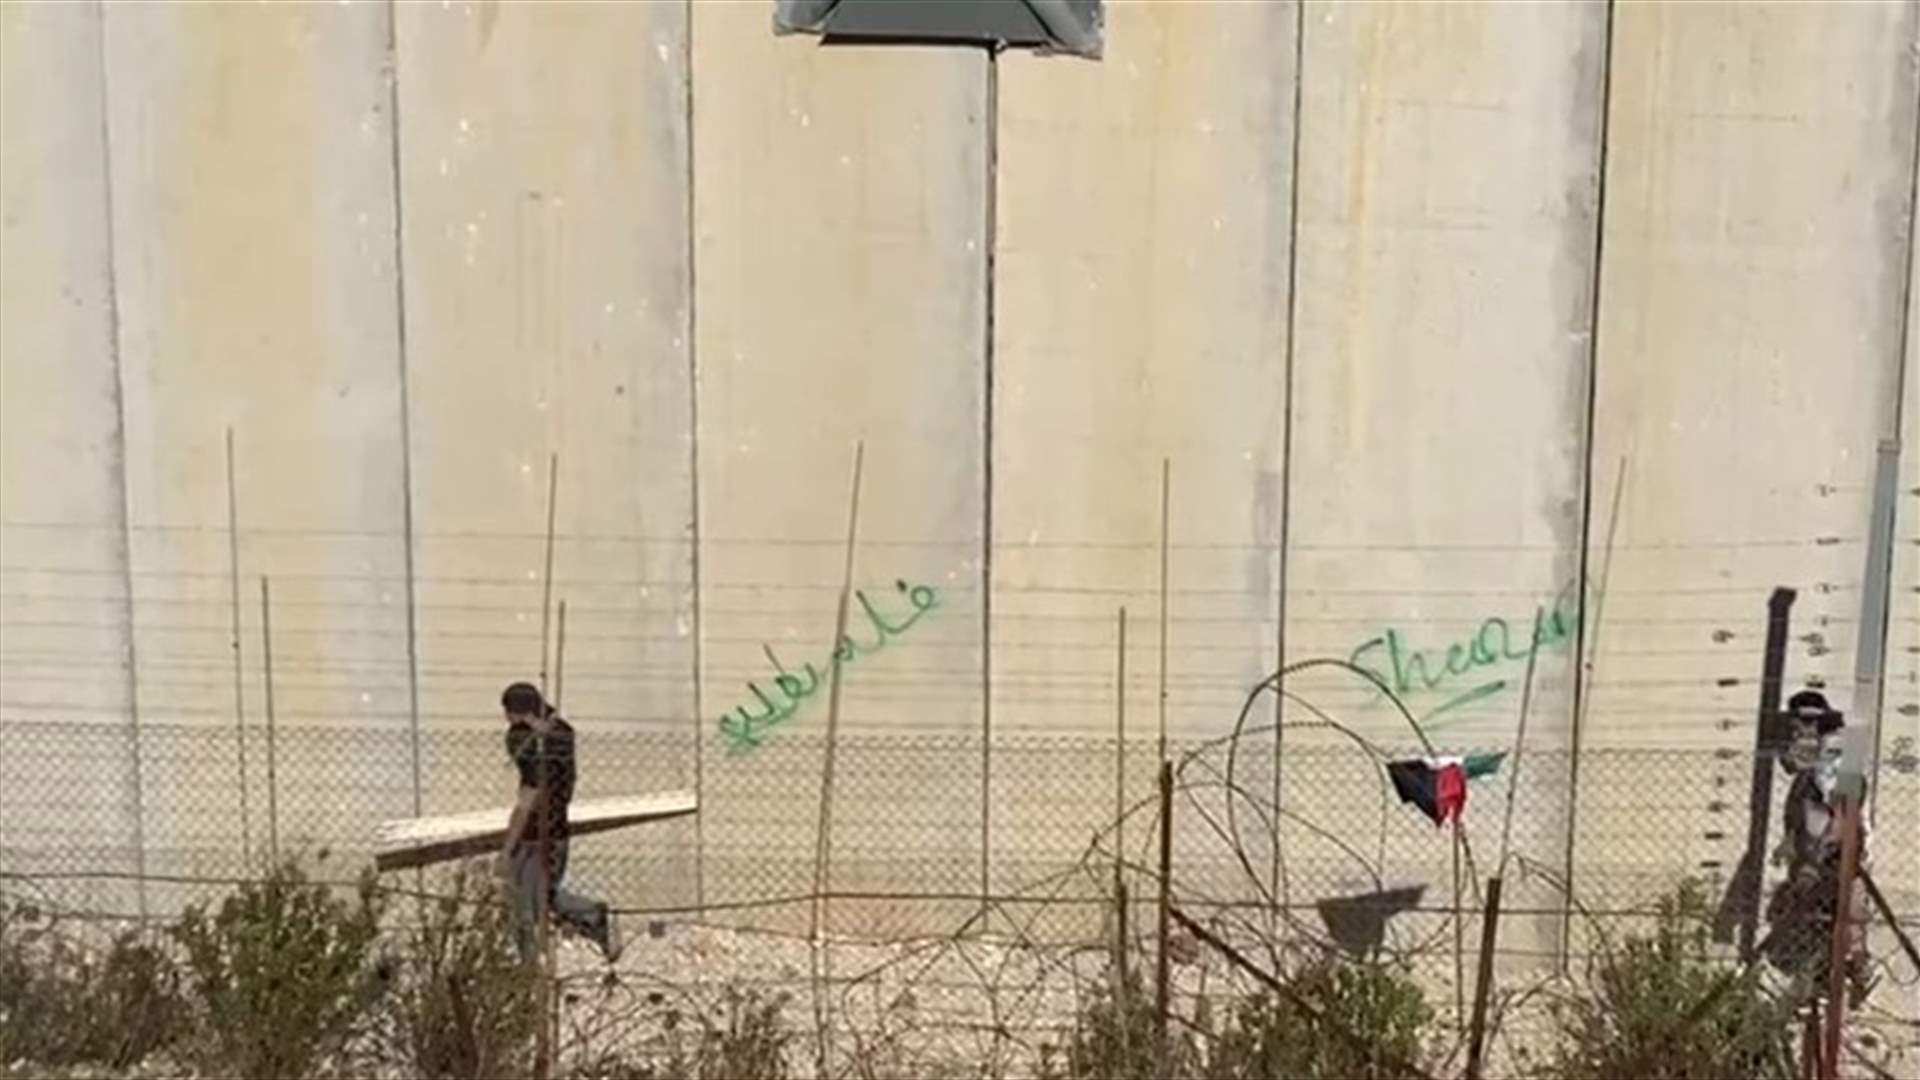 مجموعة من الفلسطينيين تسللت الى محاذاة الحائط الفاصل بين العديسة والأراضي الفلسطينية (فيديو)